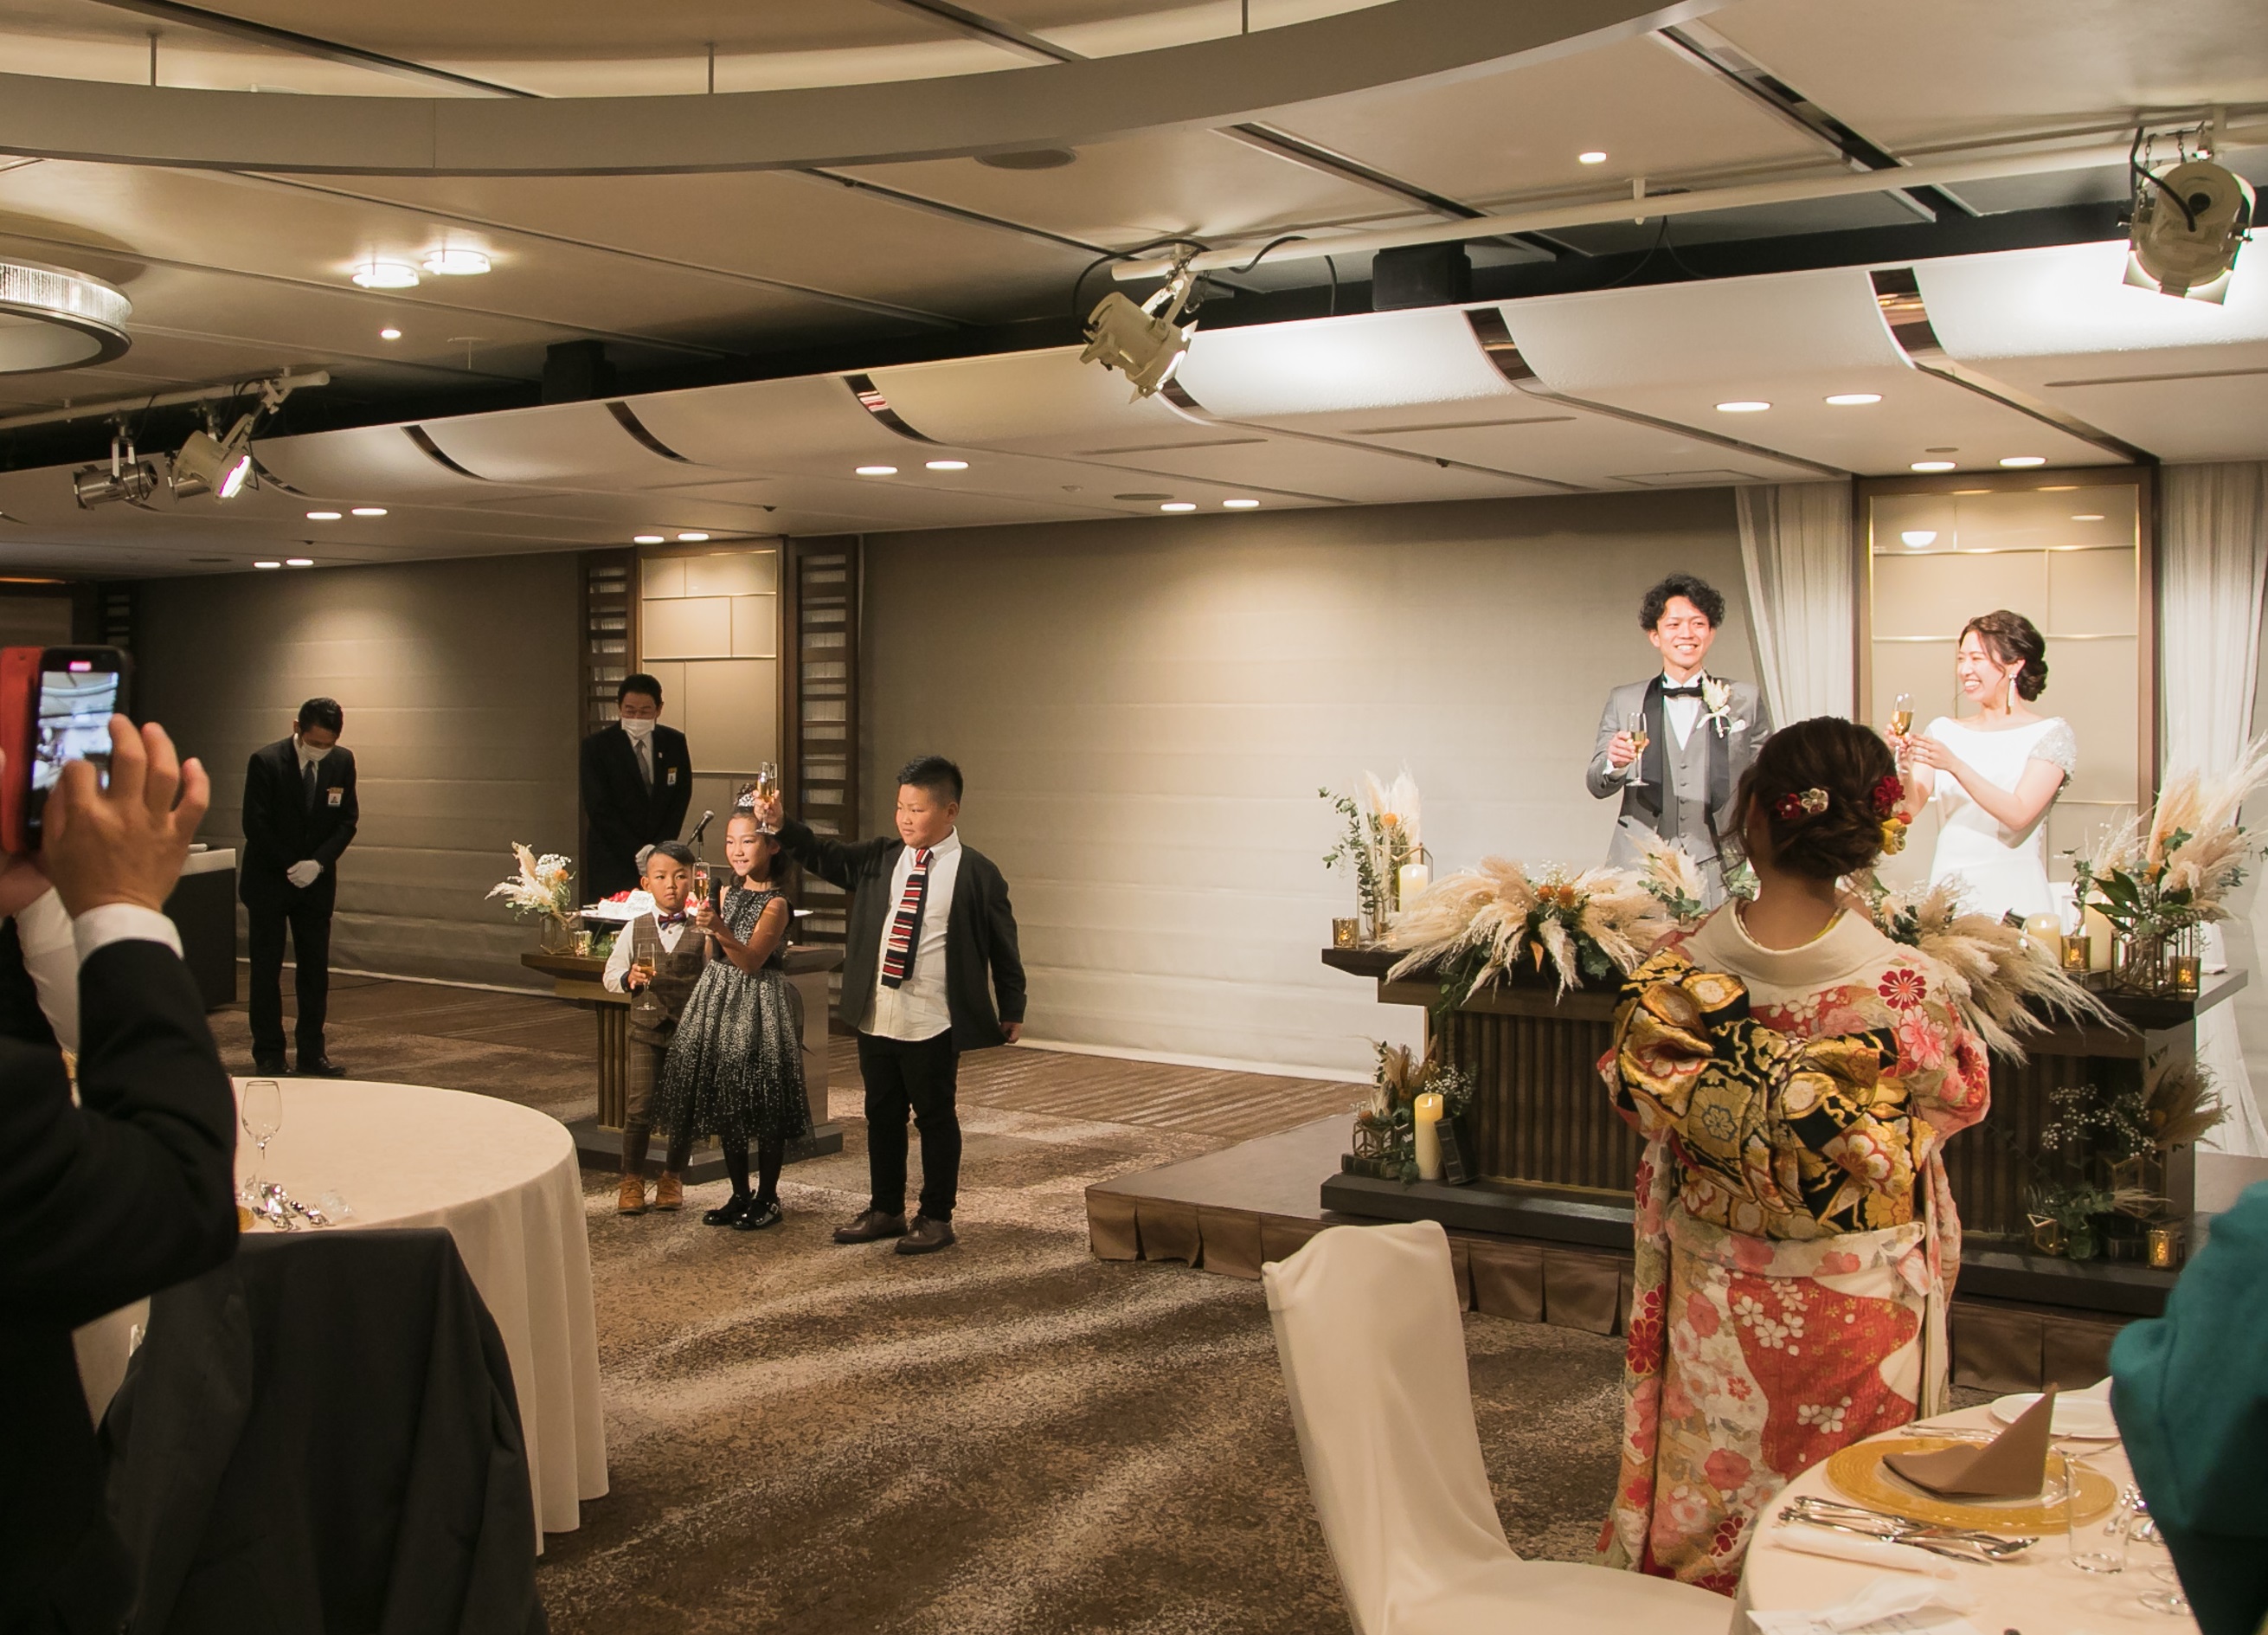 主賓の挨拶 なくてもいいの プランナーブログ 大阪のホテルウエディング 結婚式 ホテル日航大阪 Hotel Nikko Osaka 公式サイト